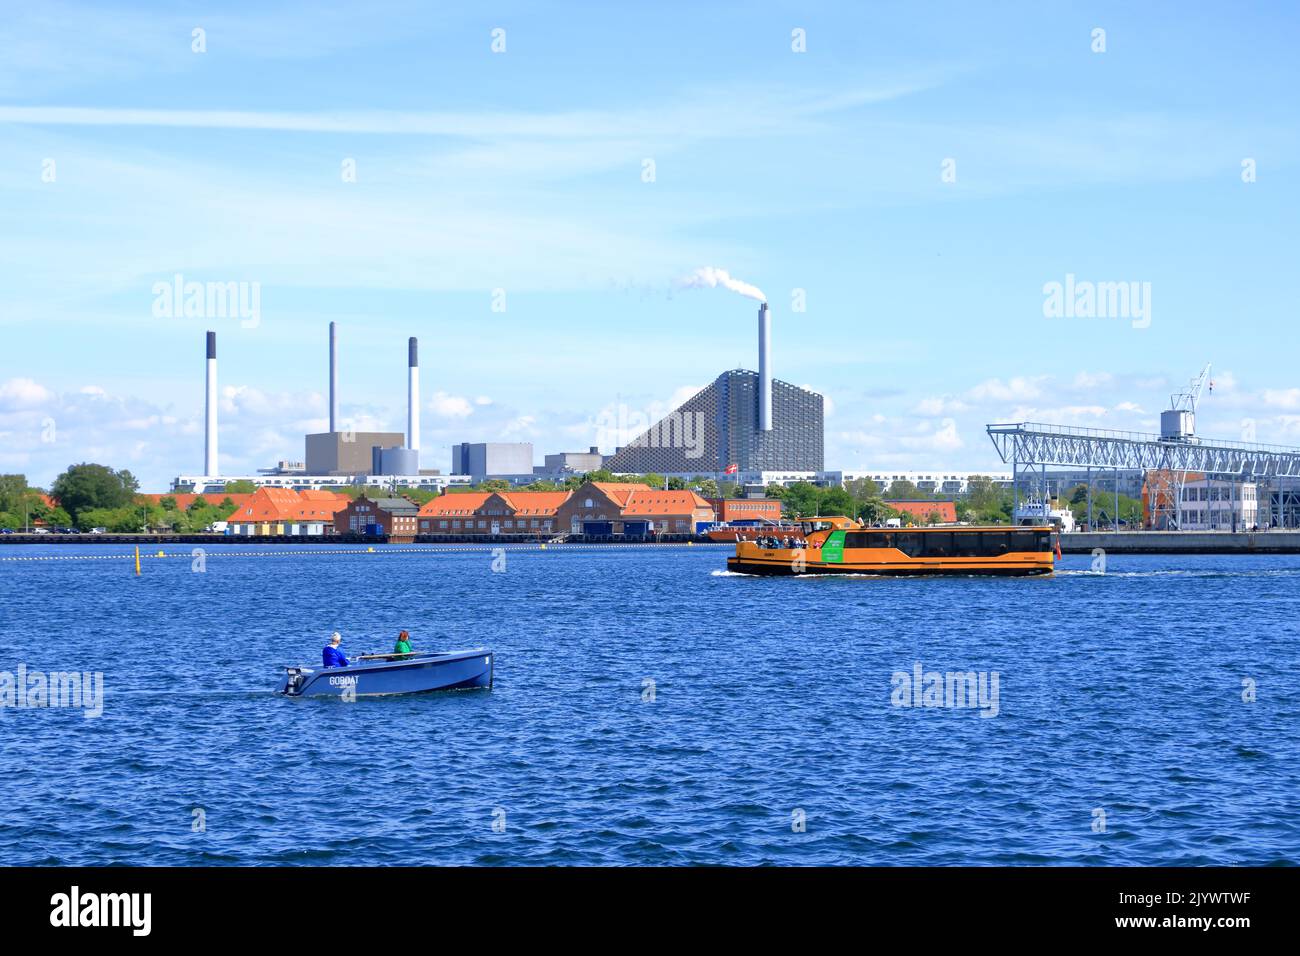 23 2022 maggio - Copenaghen, Danimarca: Il Bakke Amager, Slope o Copenhill, l'impianto di incenerimento, l'impianto di trattamento termico e di produzione di energia e la fac ricreativa Foto Stock